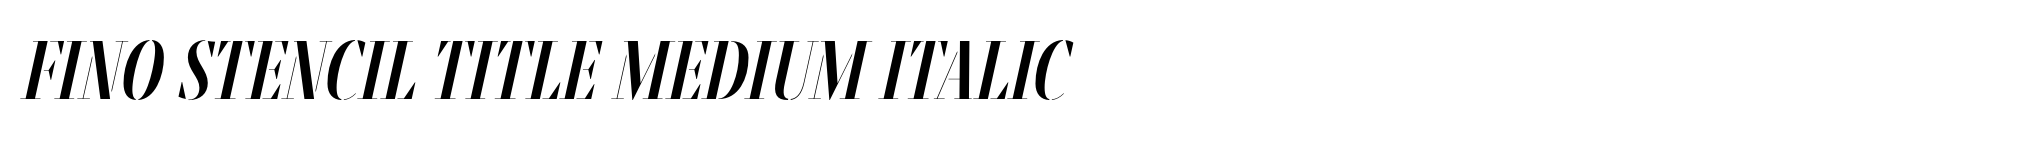 Fino Stencil Title Medium Italic image